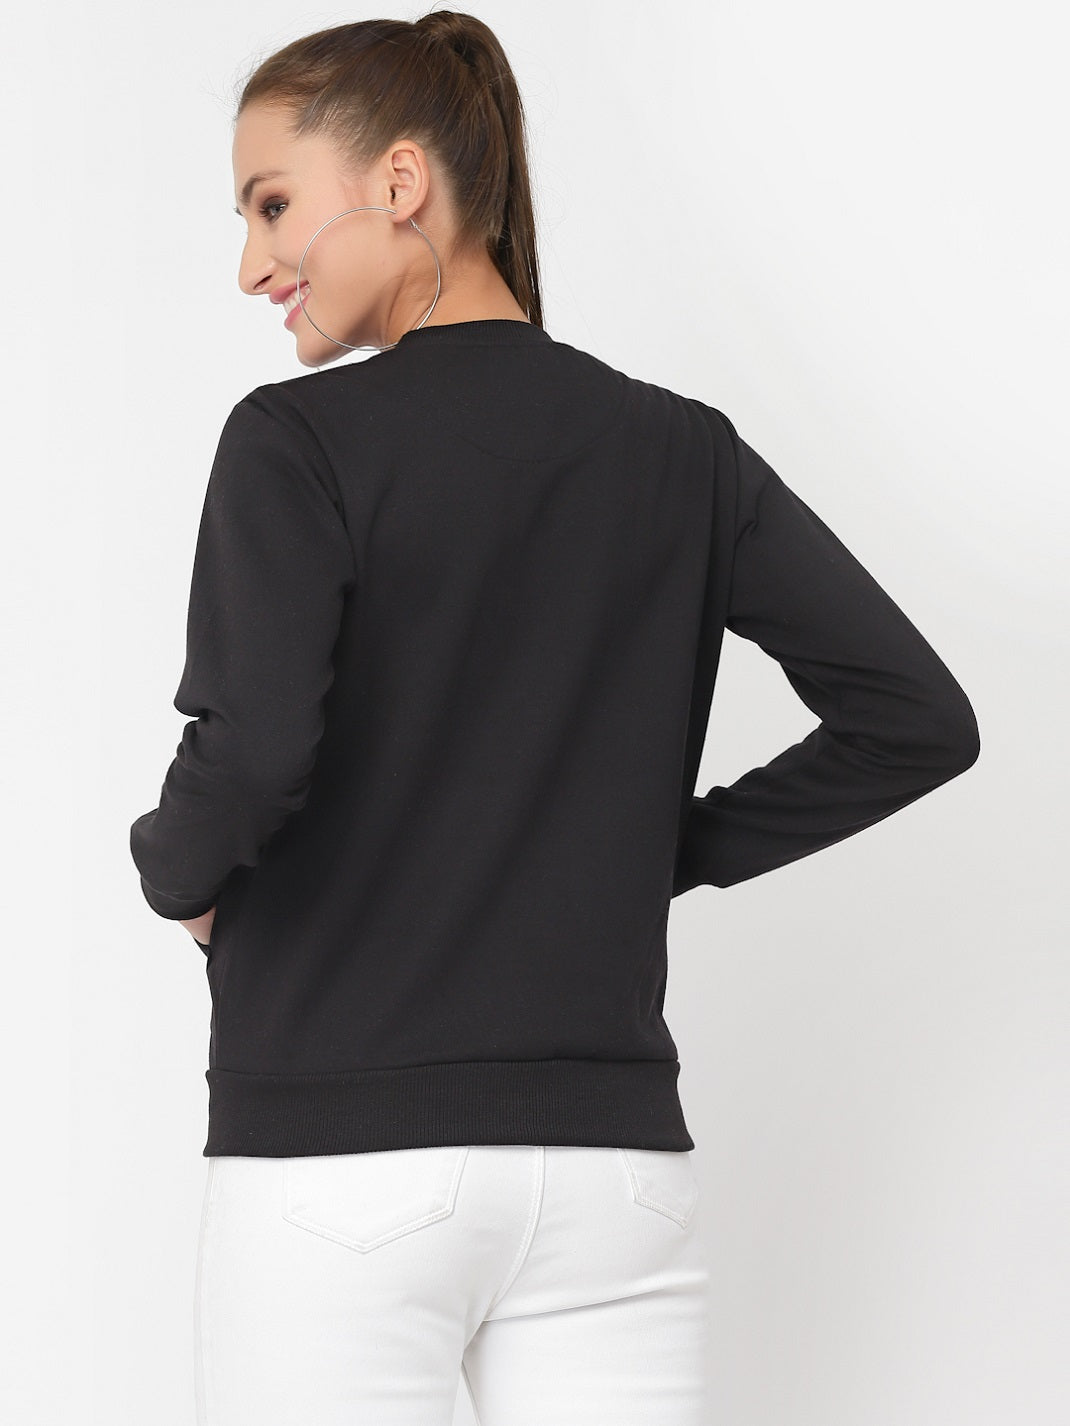 UZARUS Women's Cotton Fleece Premium Sweatshirt